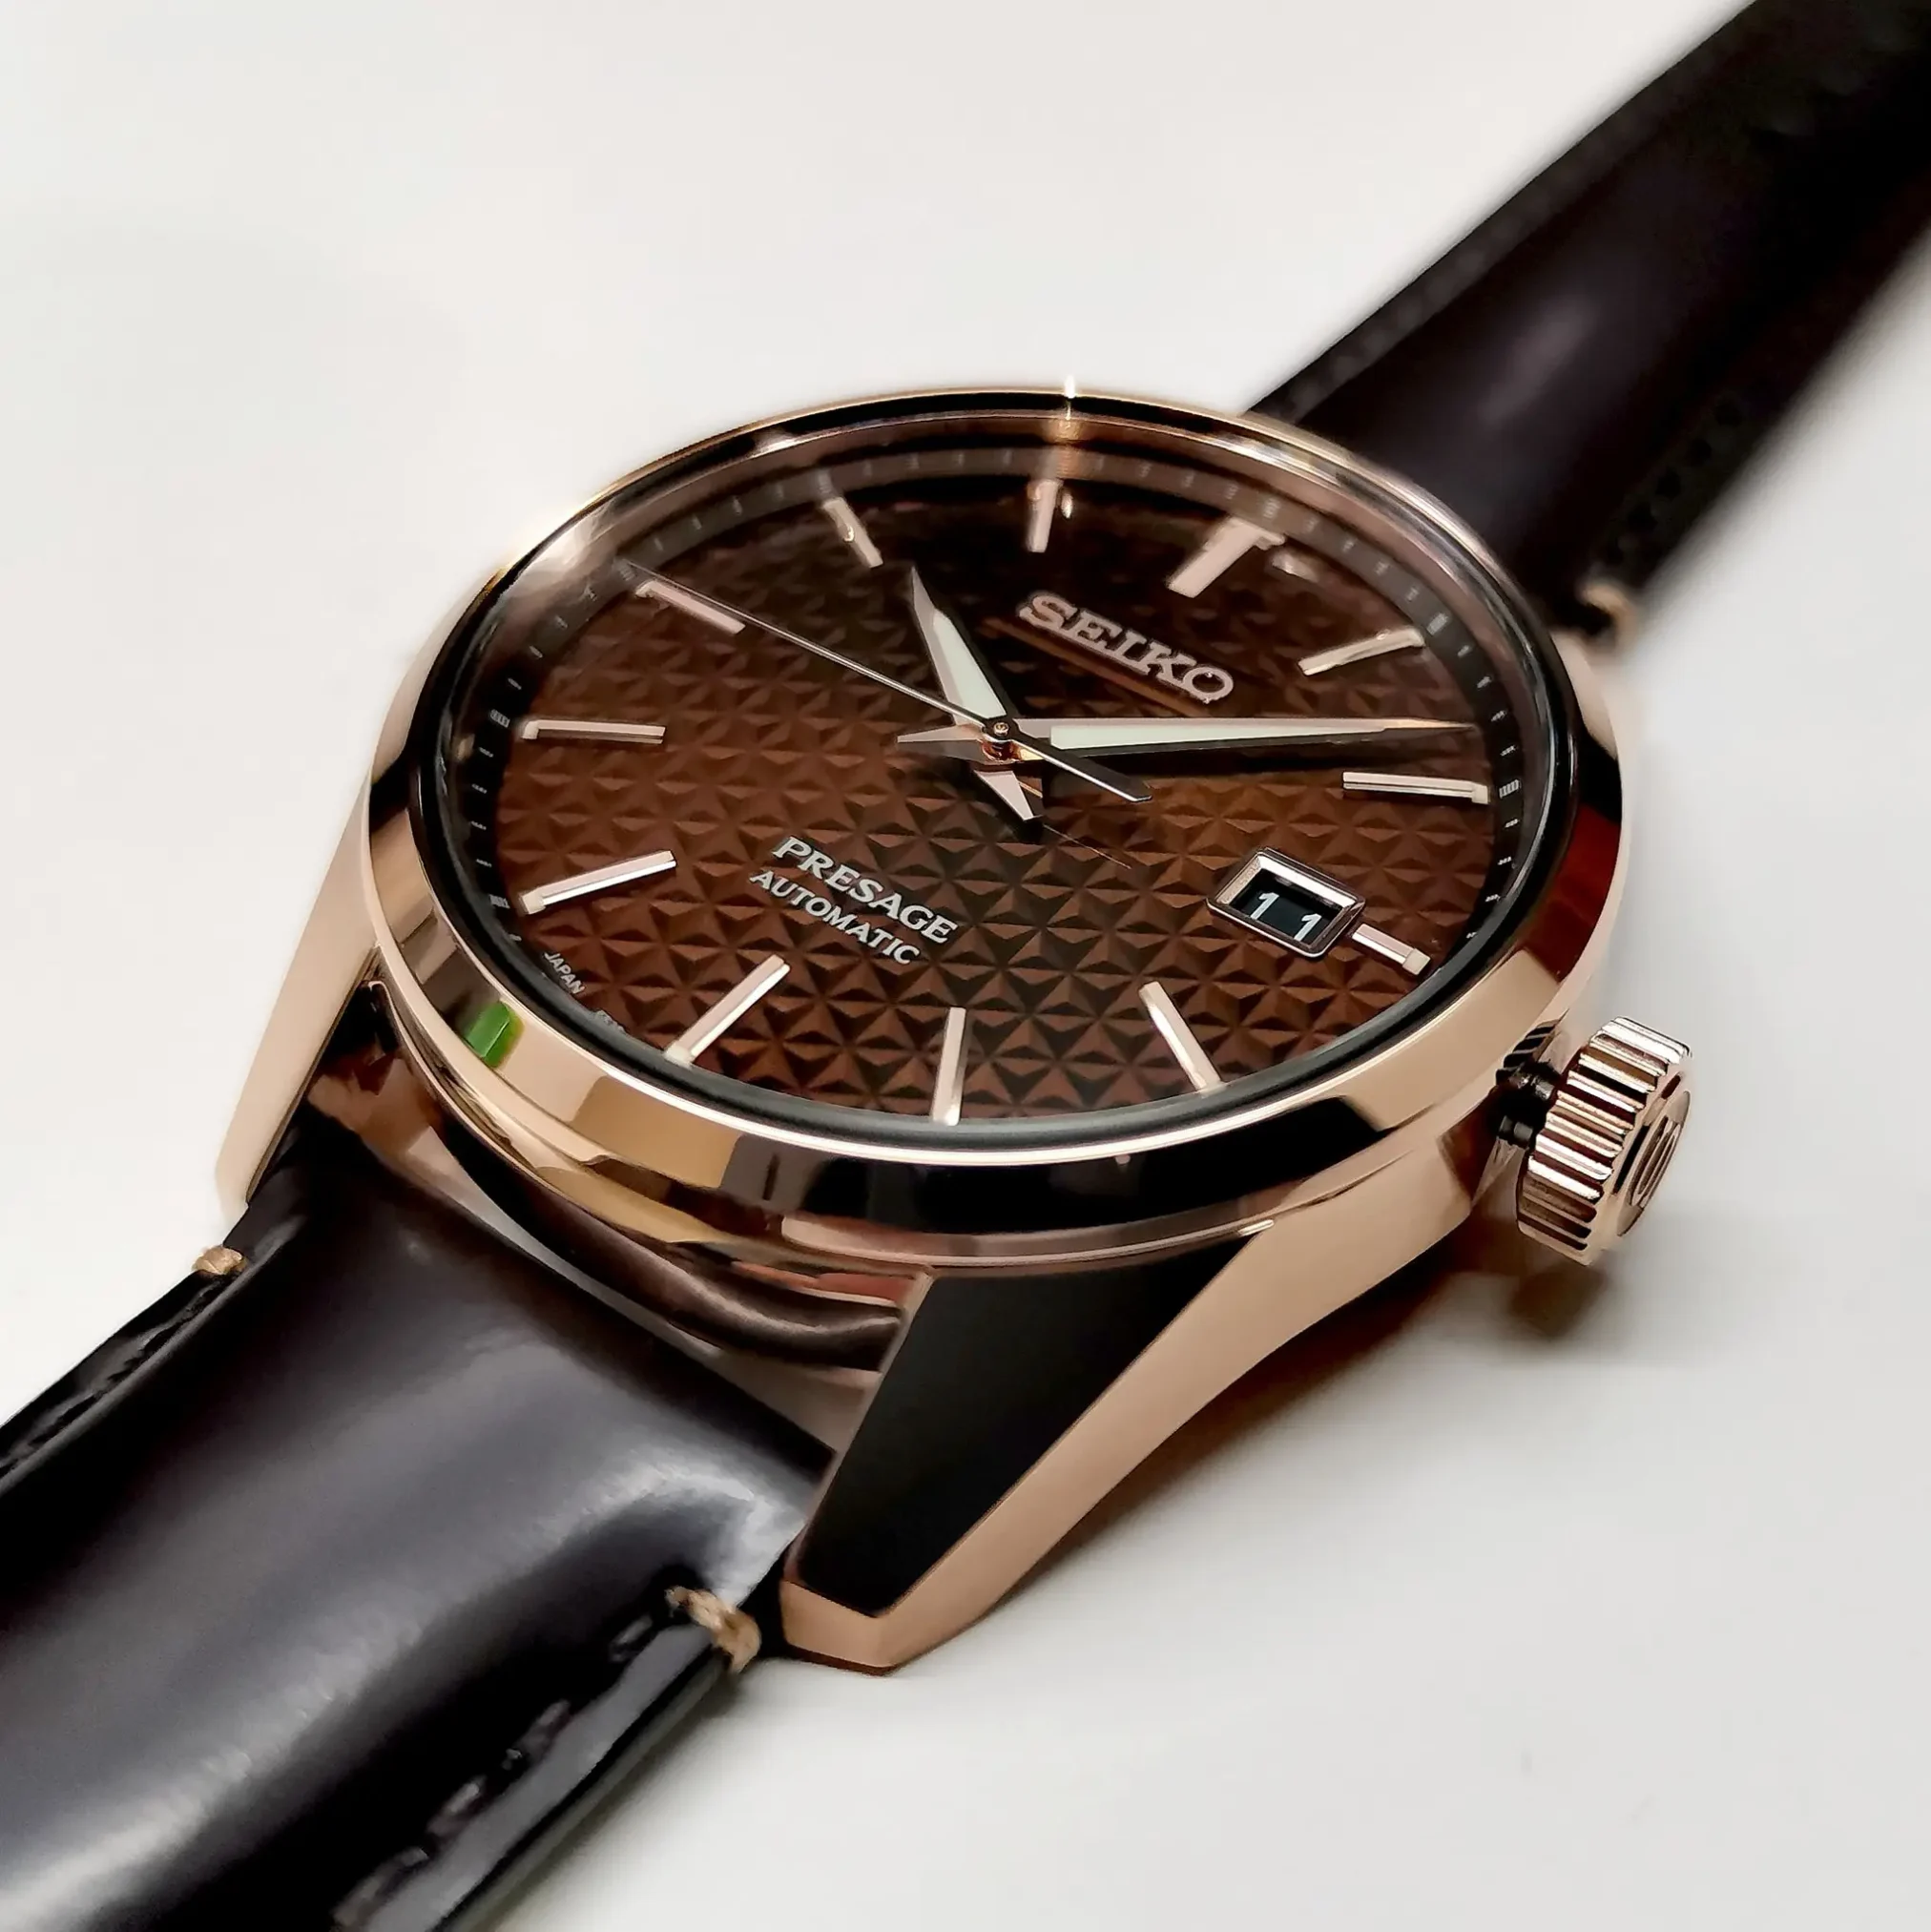 Đồng hồ Seiko Presage Sharp Edged Series SARX080 (SPB170J1) mặt số màu nâu. Dây đeo bằng da. Thân vỏ bằng thép mạ PVD rose gold sang trọng.